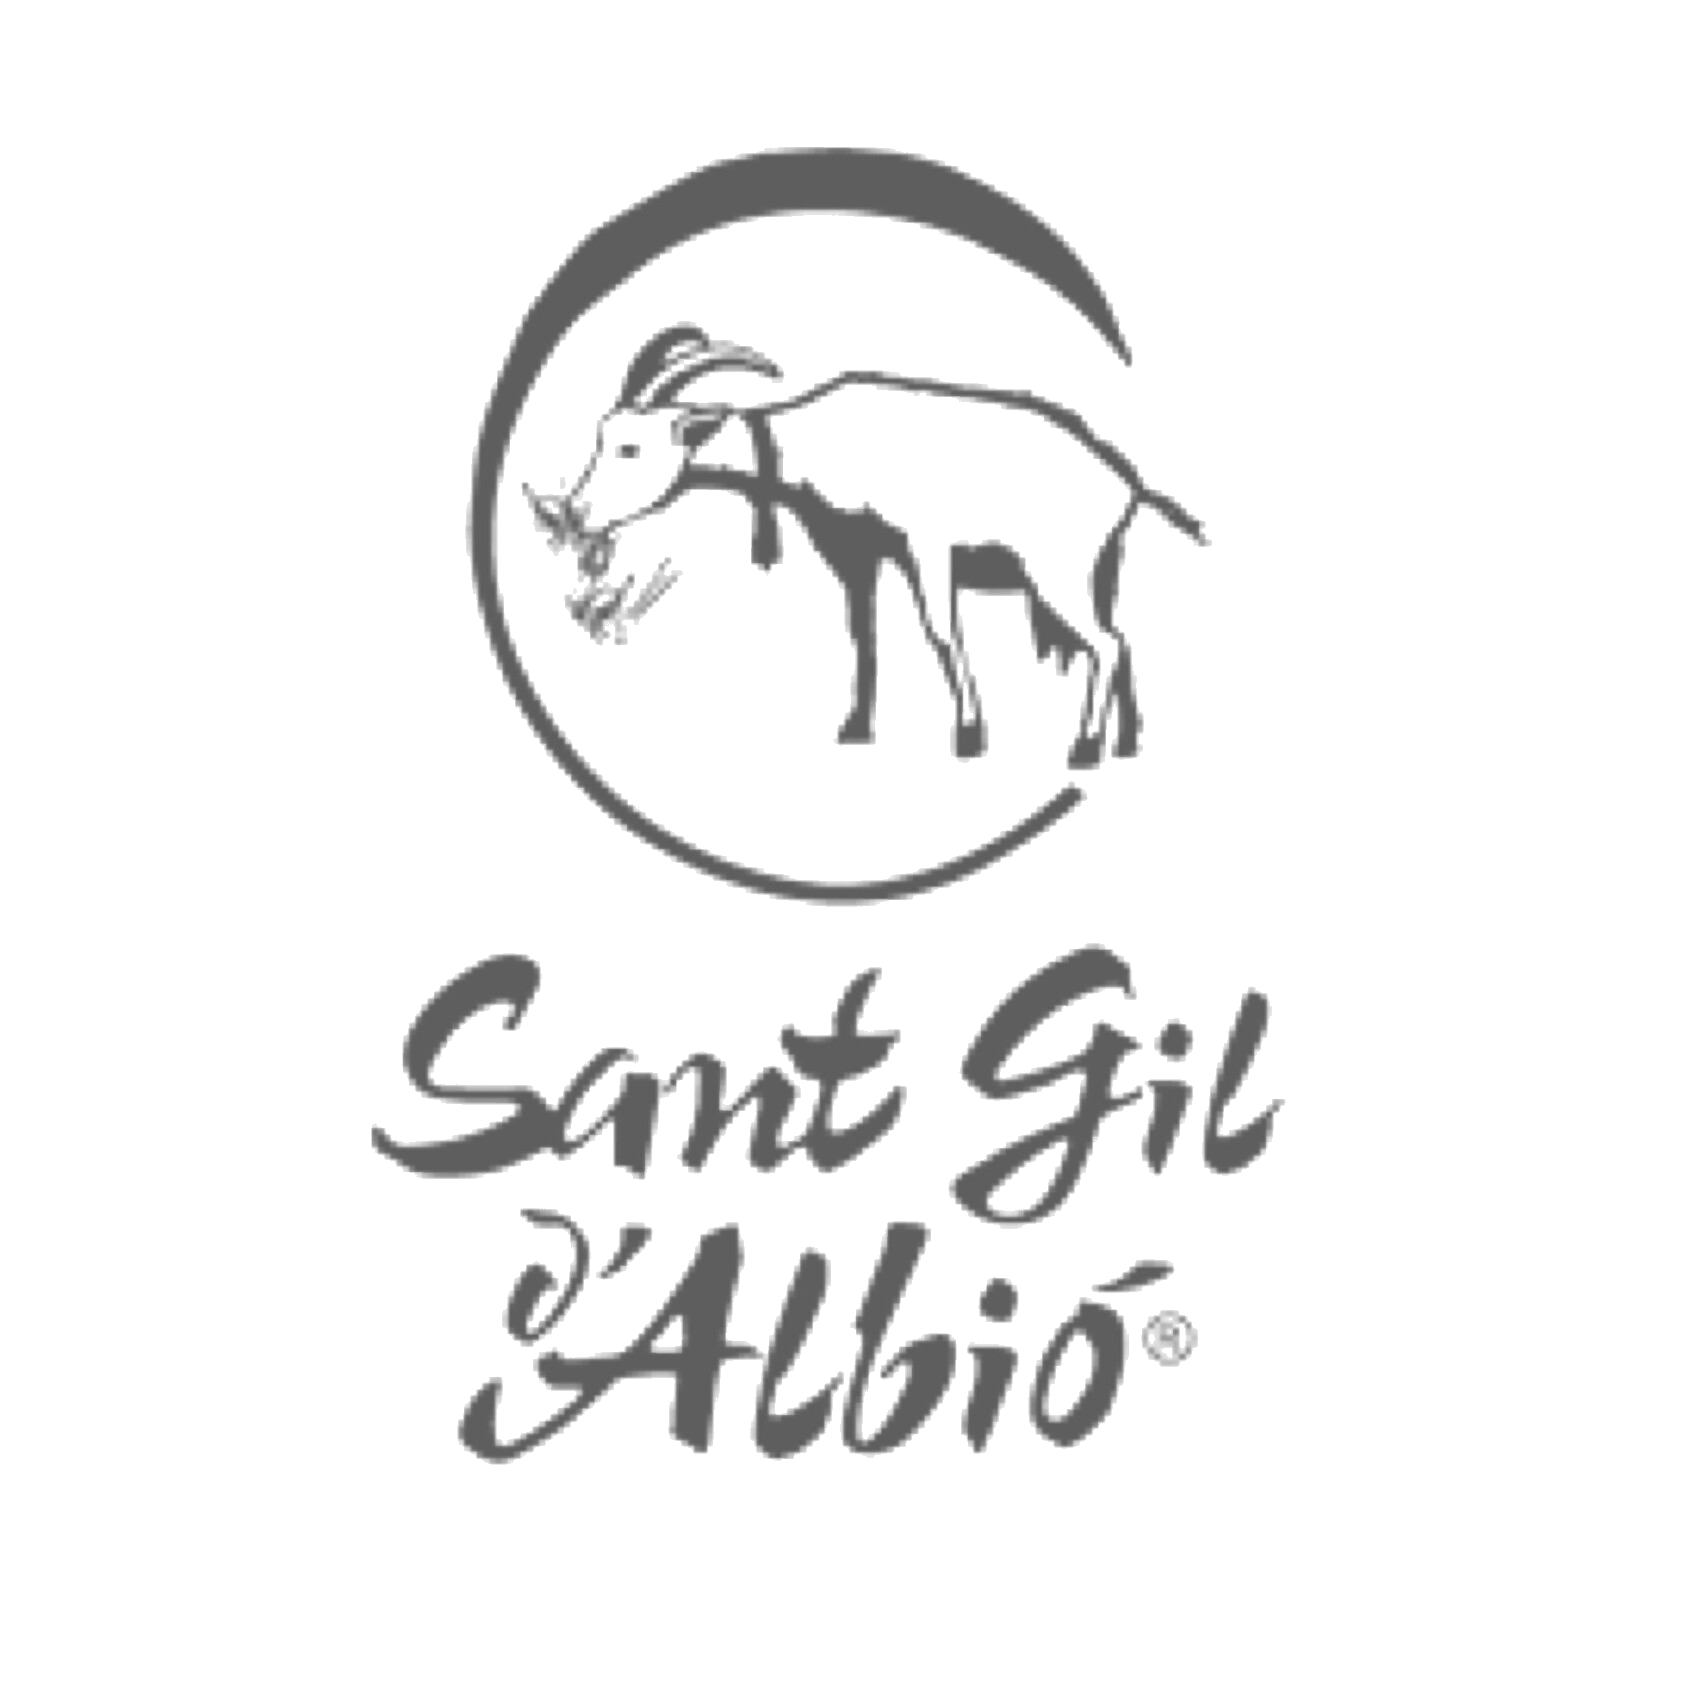 logo-sant-gil-albio-1x1-transparent-gris